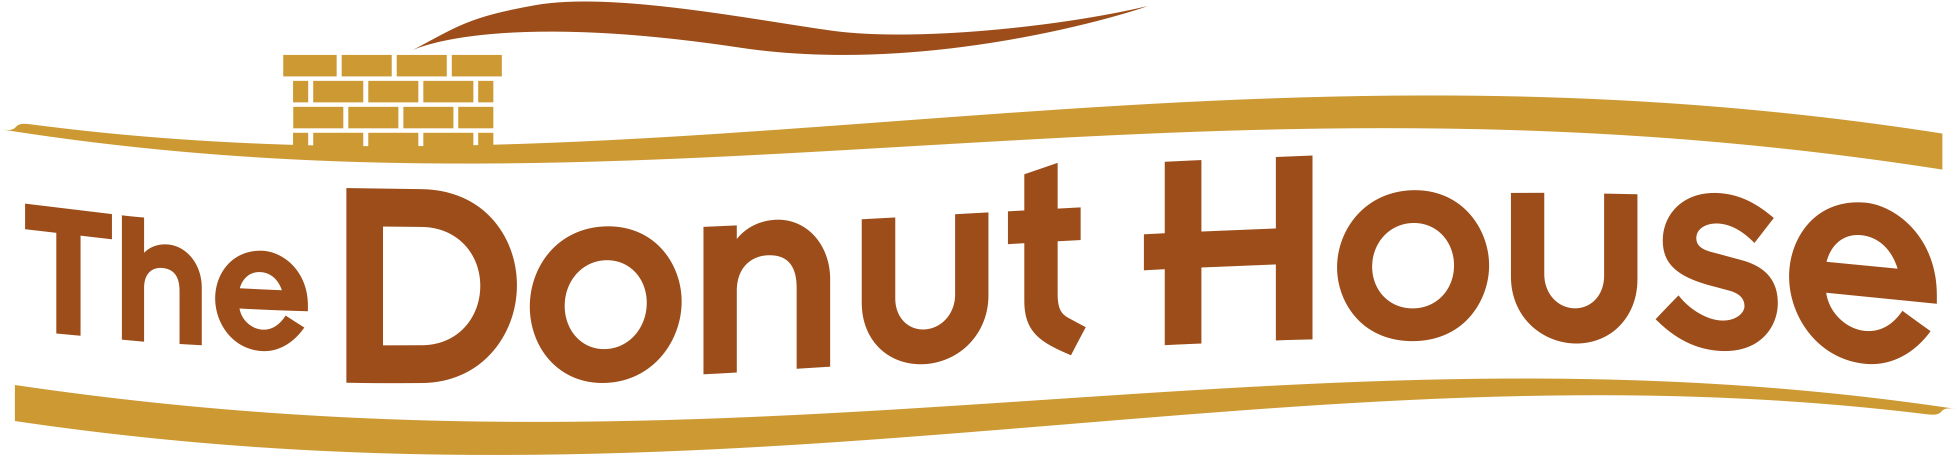 Logo - The Donut House (2000x517)